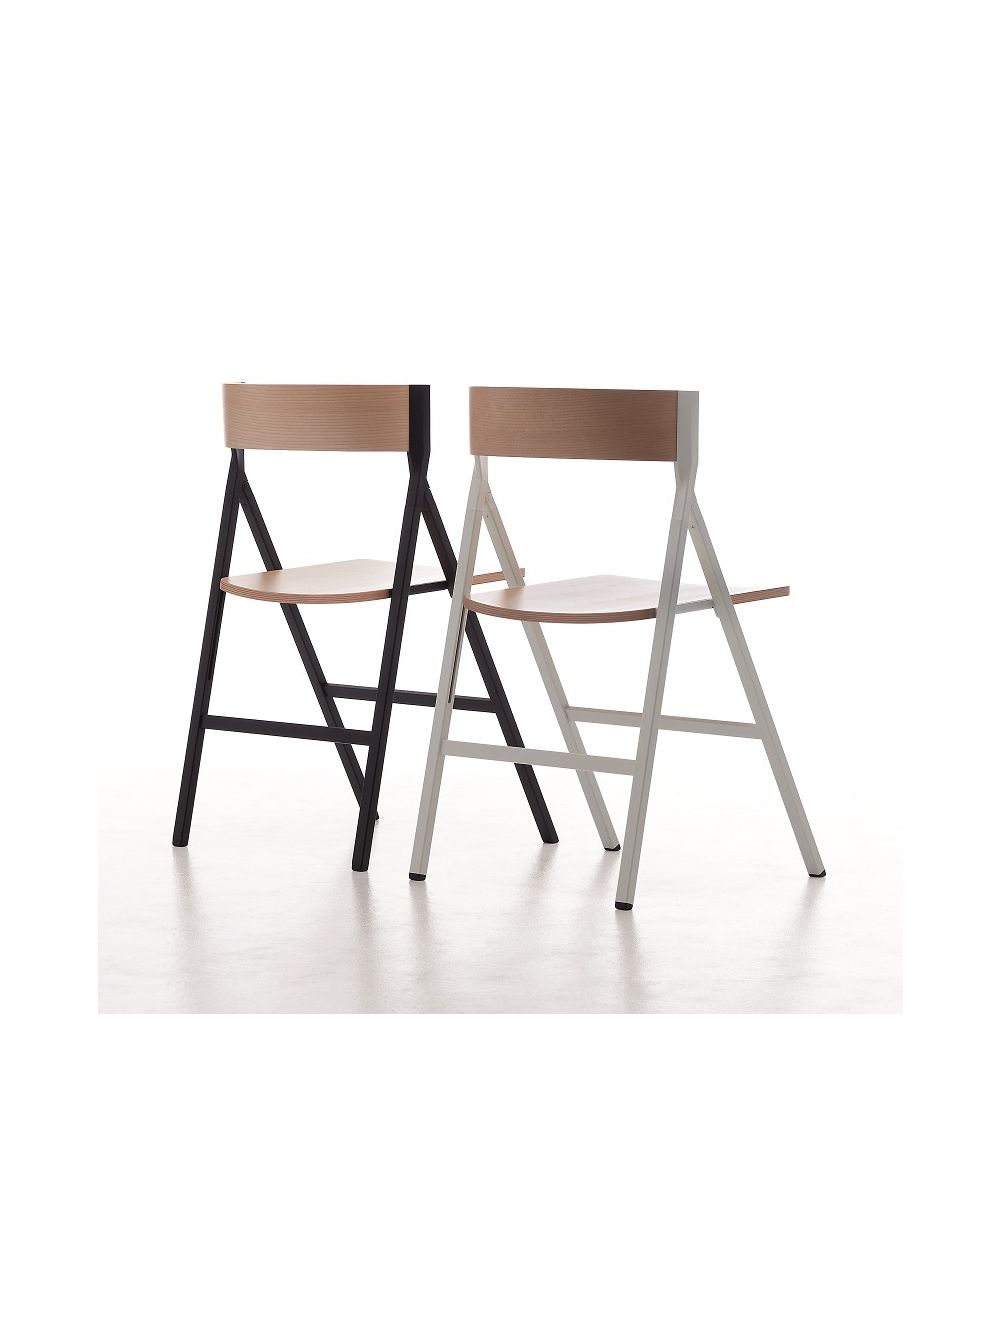 kleermaker textuur woensdag Klapp Folding Chair Arrmet | Sedie.Design®